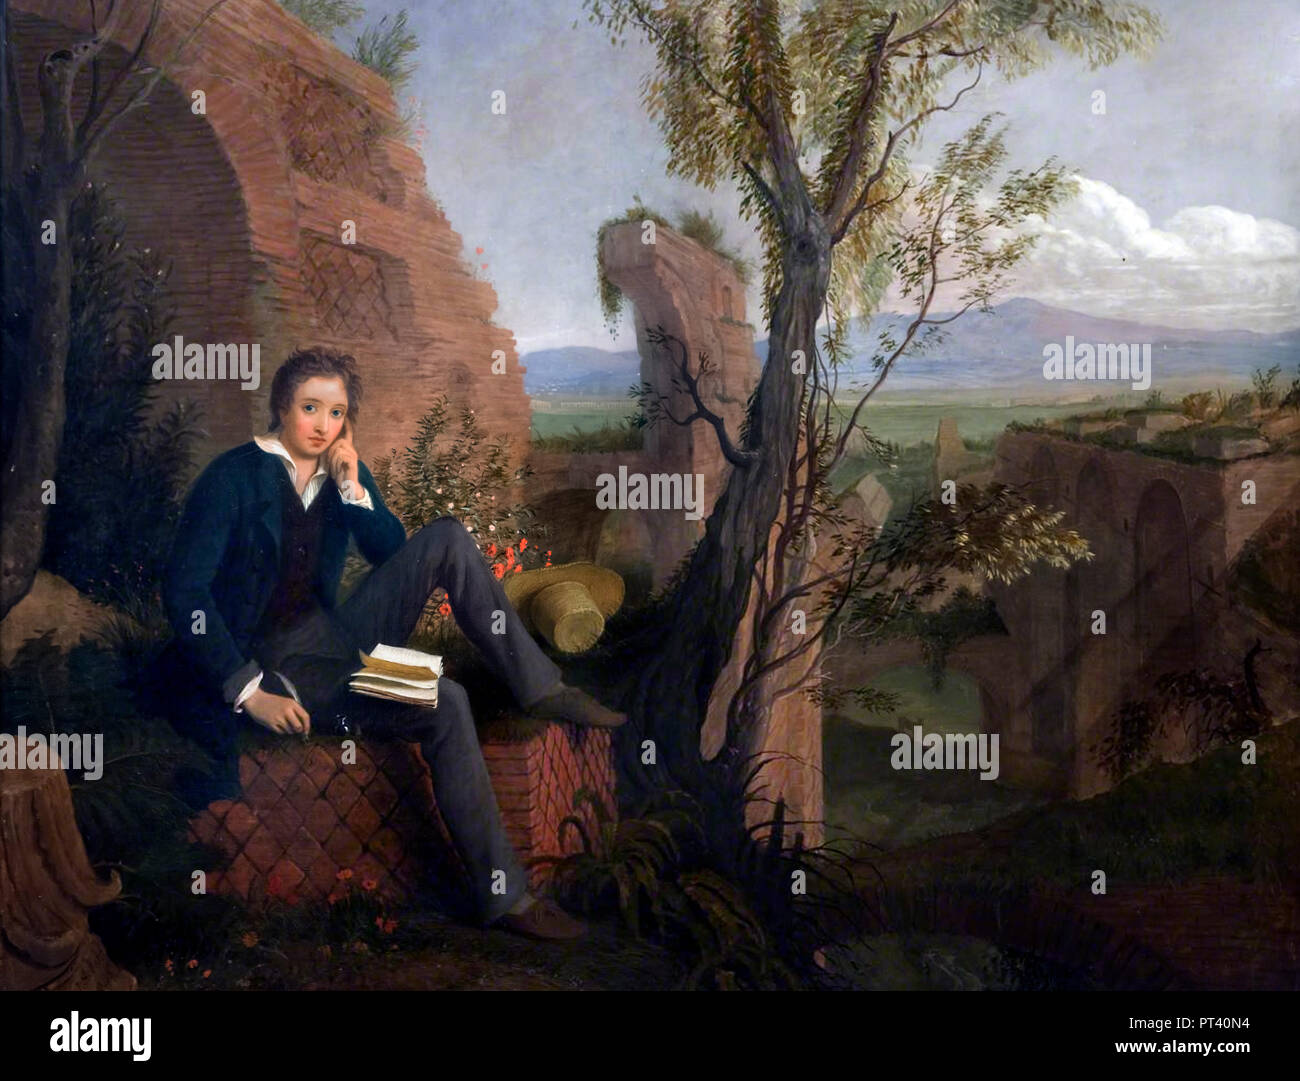 Percy Shelley. Portrait du poète romantique anglais, Percy Bysshe Shelley (1792-1822) par Joseph Severn, huile sur toile, 1845 Banque D'Images